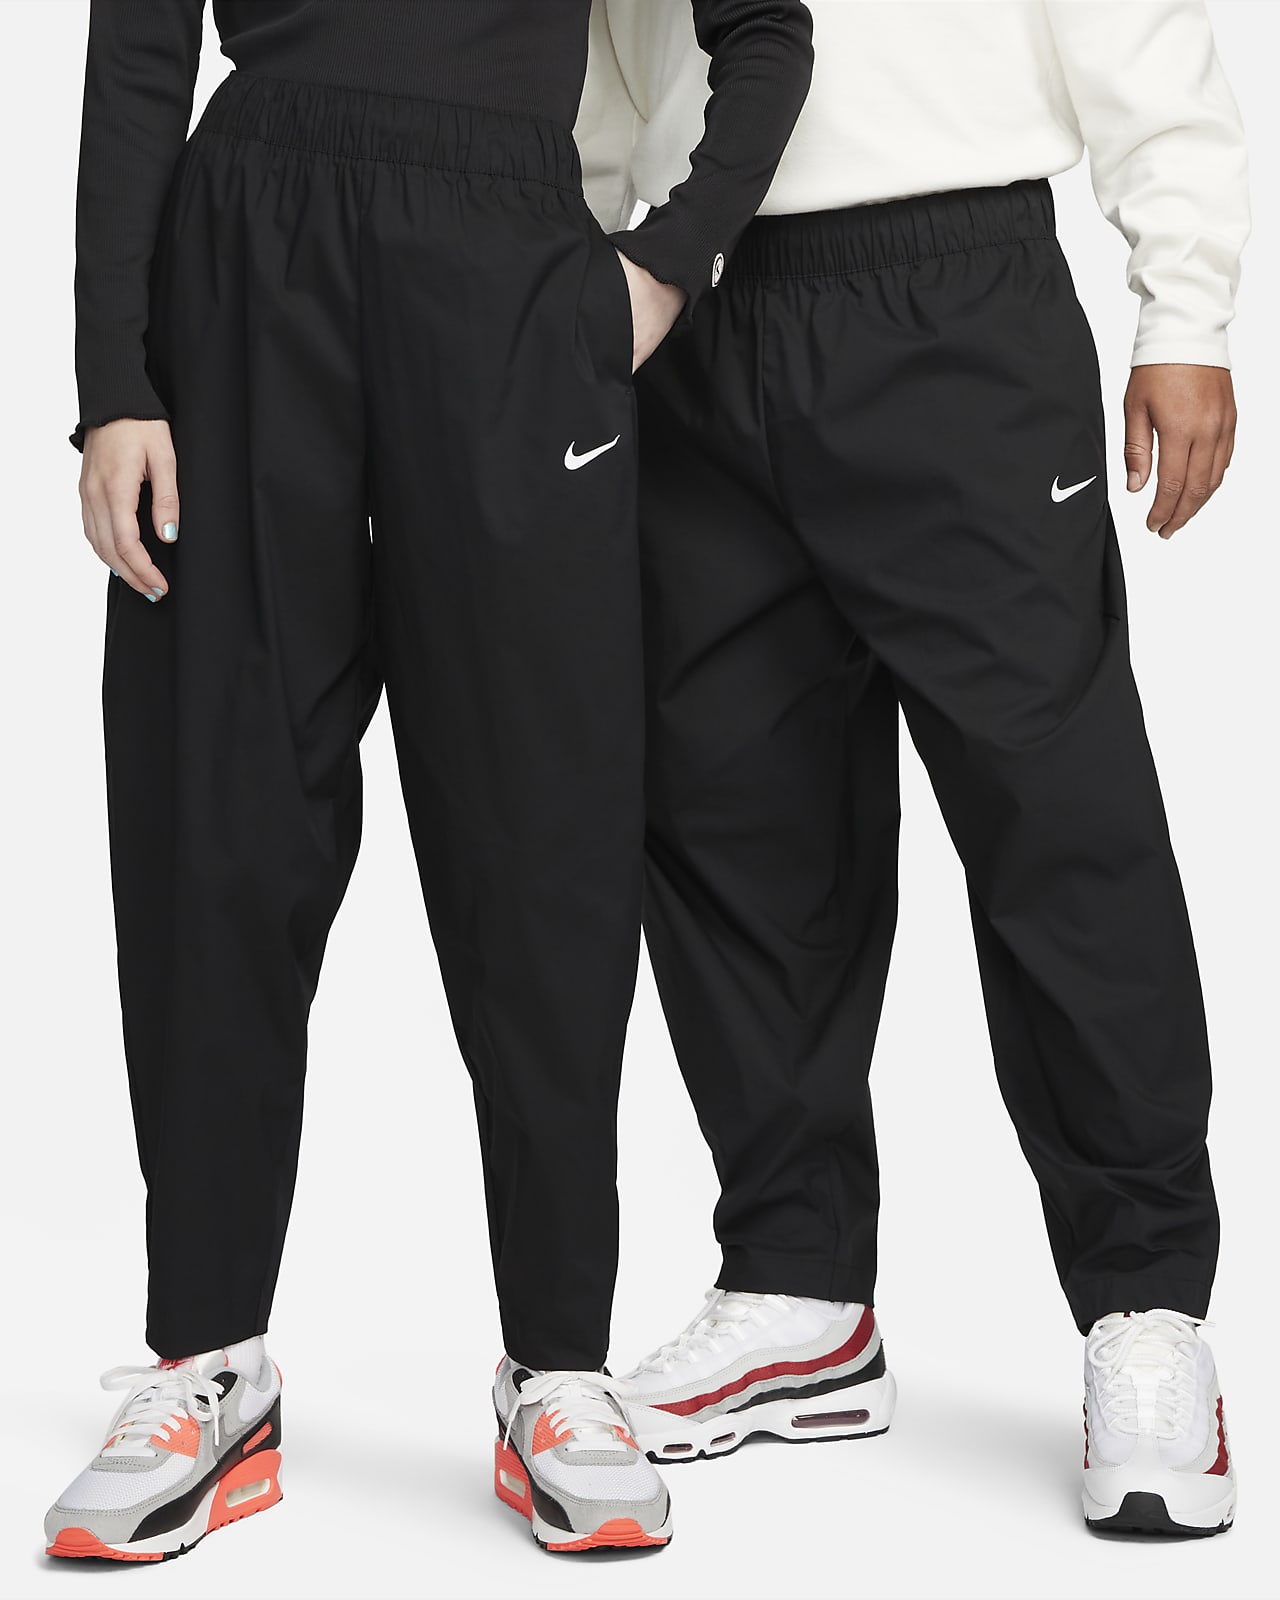 mengen Blij symbool Nike Sportswear Essential Voorgevormde broek met hoge taille voor dames.  Nike BE